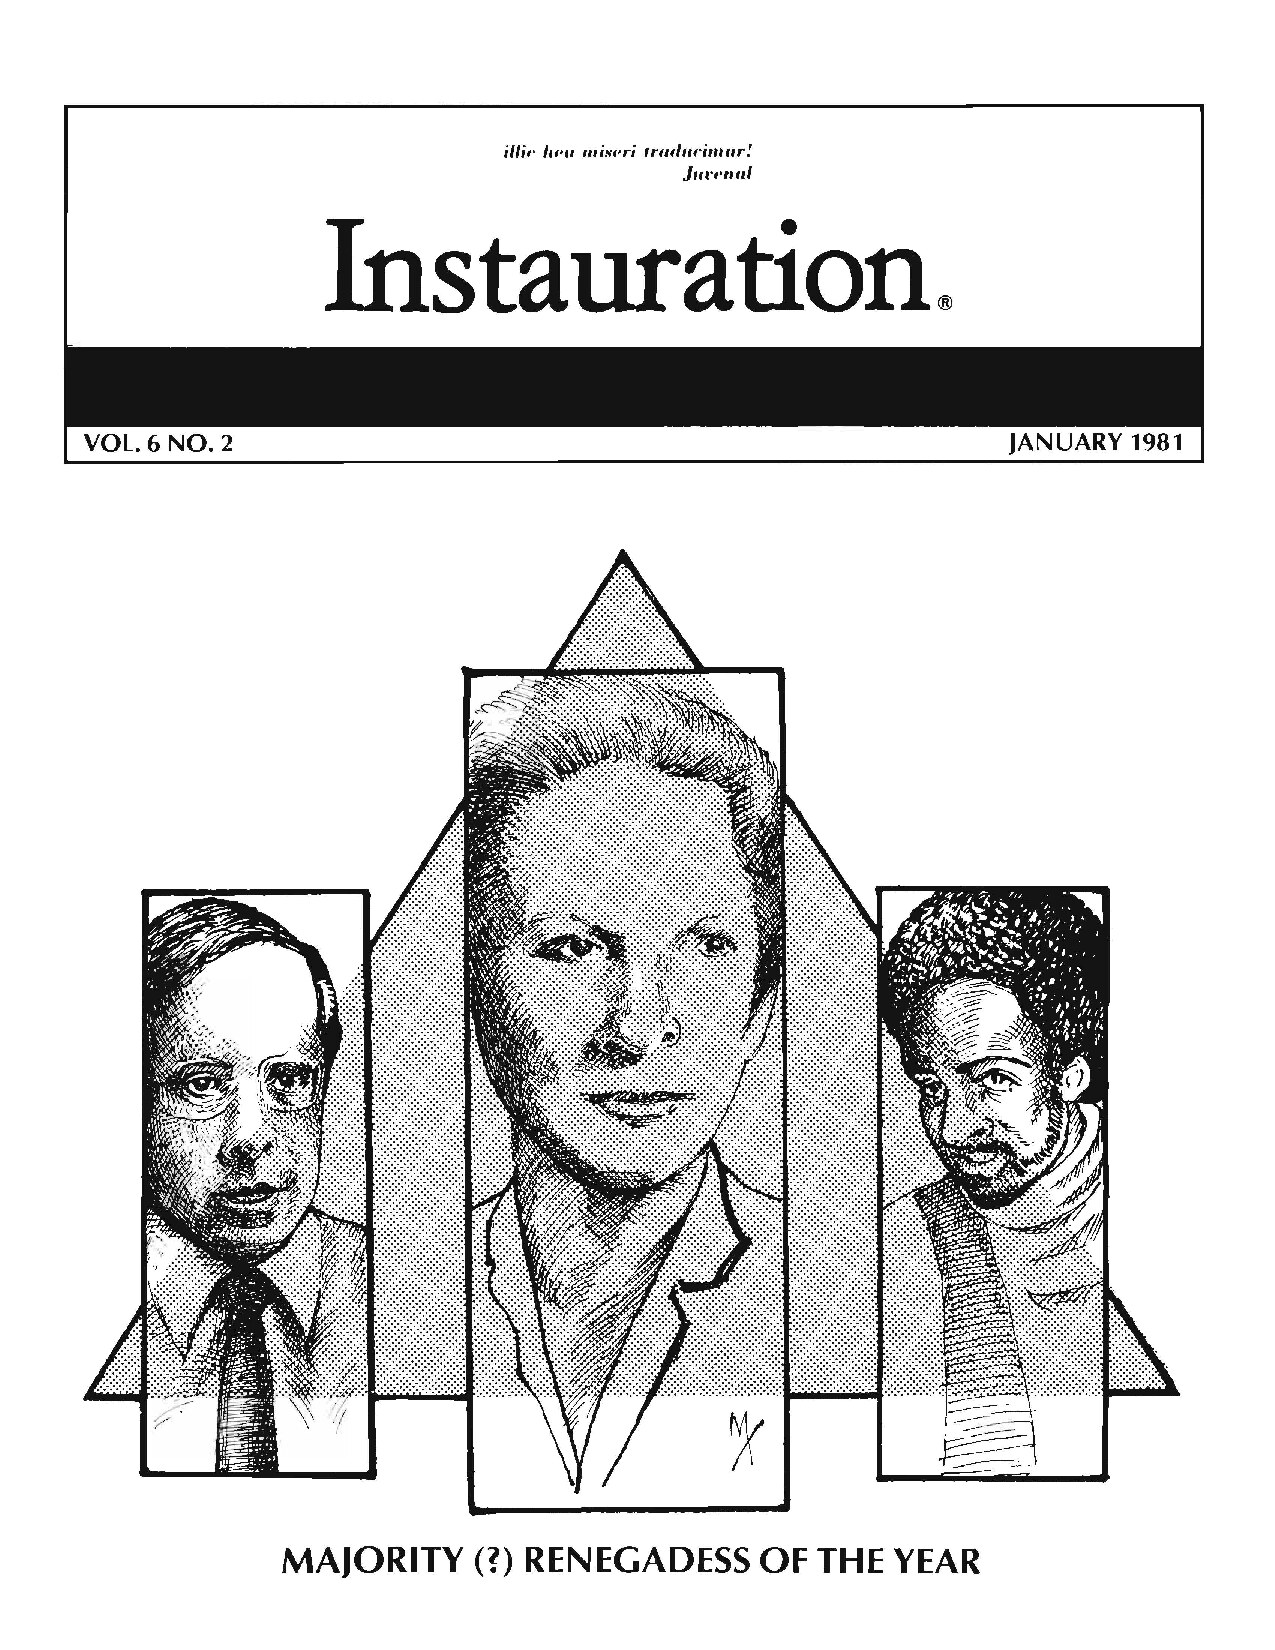 Instauration-1981-1-January-Vol6-No2